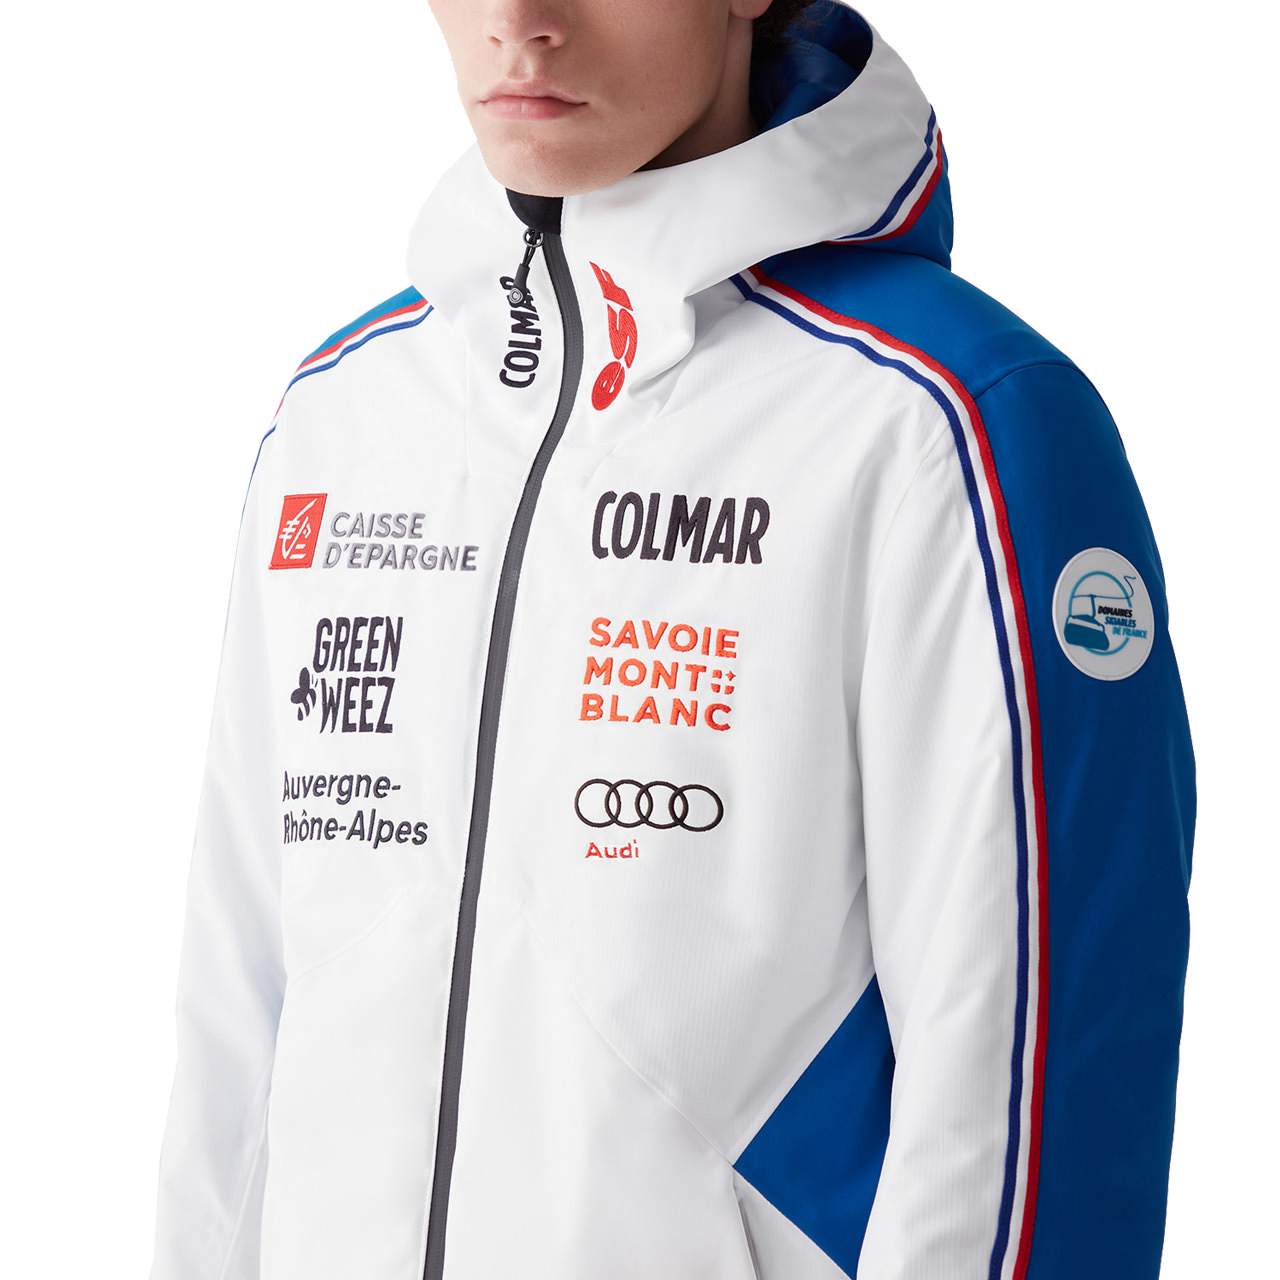 2PQ Veste Ski Homme Chamonix - Bleu COLMAR - Sports Aventure